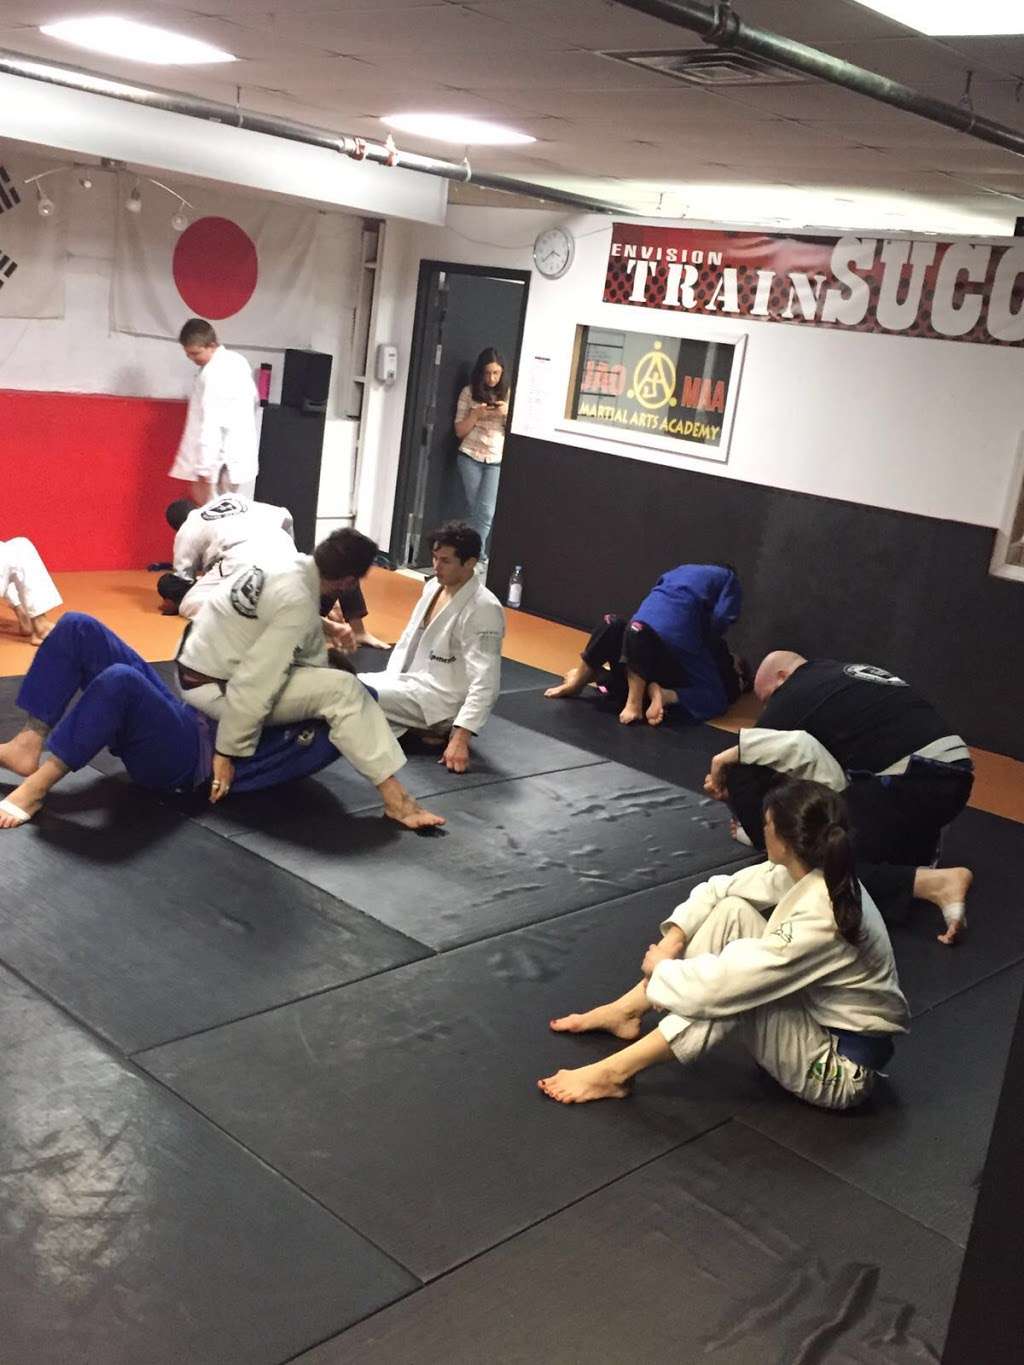 JAO Martial Arts Academy/Caio Terra Brazilian Jiu Jitsu NY | 609 Avenue X, Brooklyn, NY 11235 | Phone: (732) 526-2551